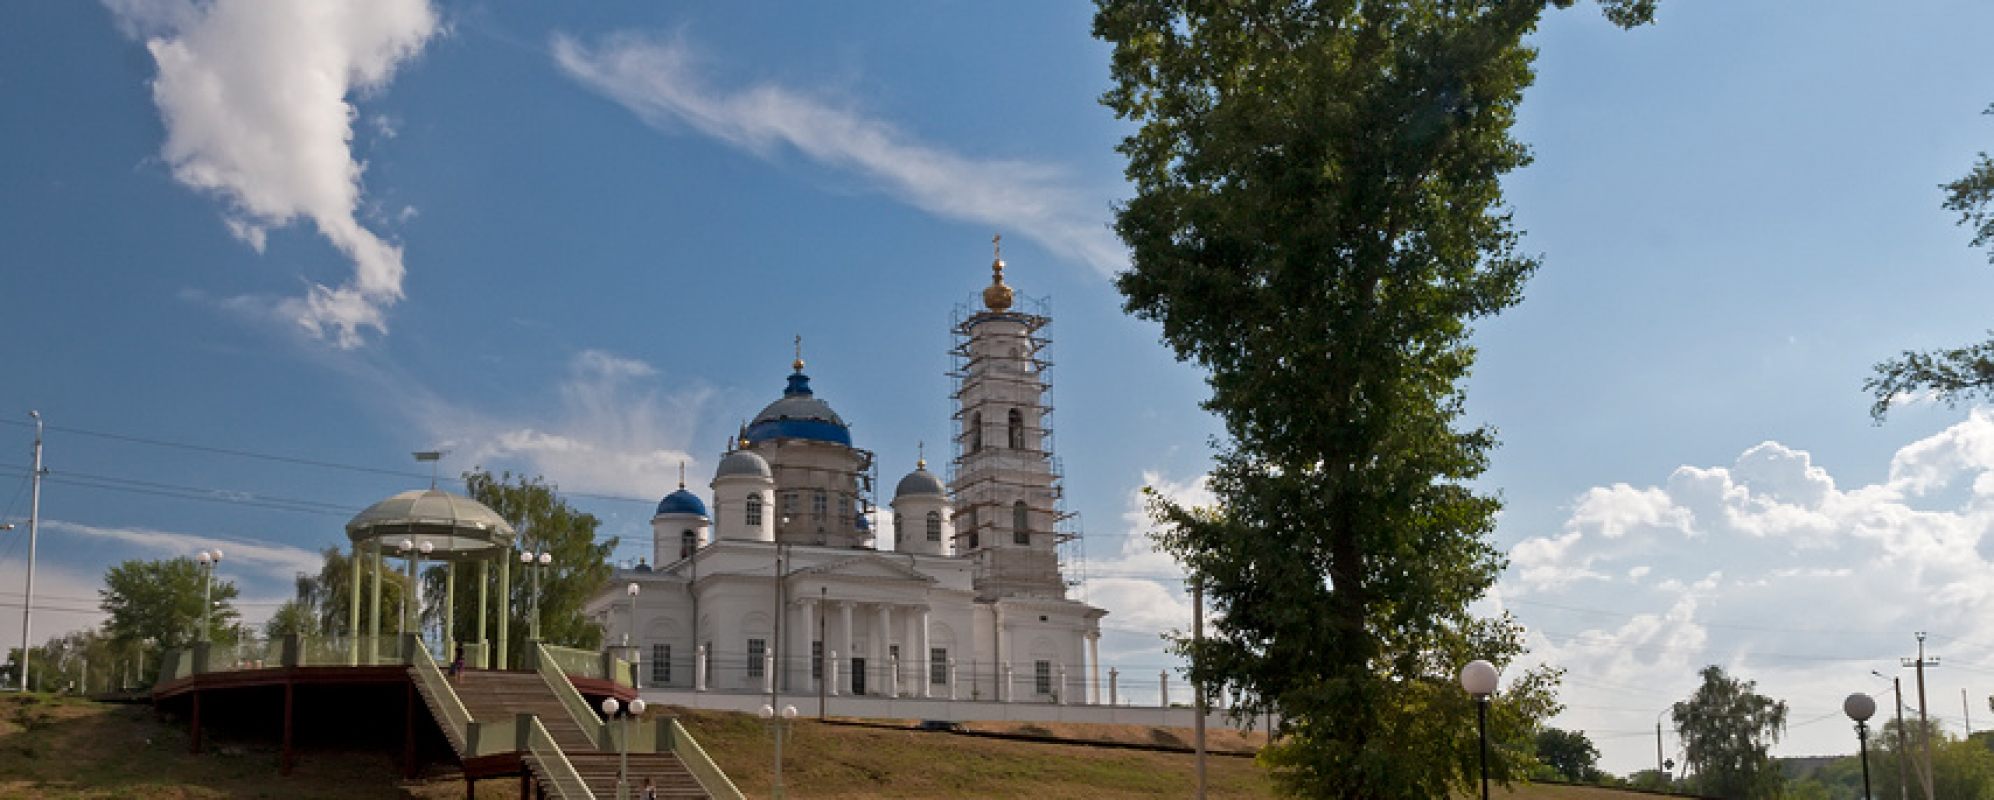 Фотографии храма Никольский кафедральный собор